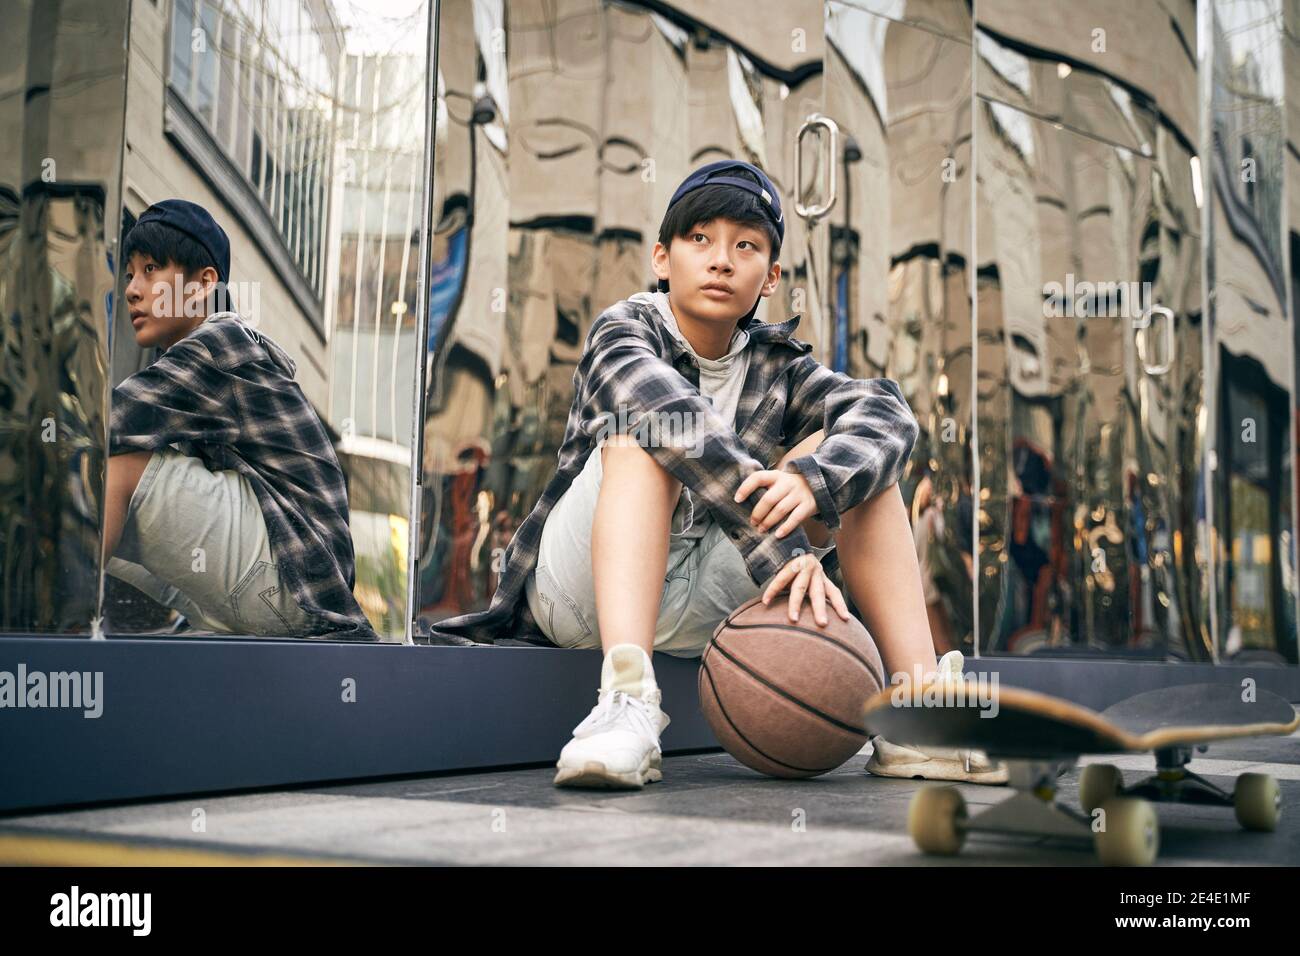 ragazzo asiatico adolescente prendere una pausa seduta a terra con basket e skateboard Foto Stock